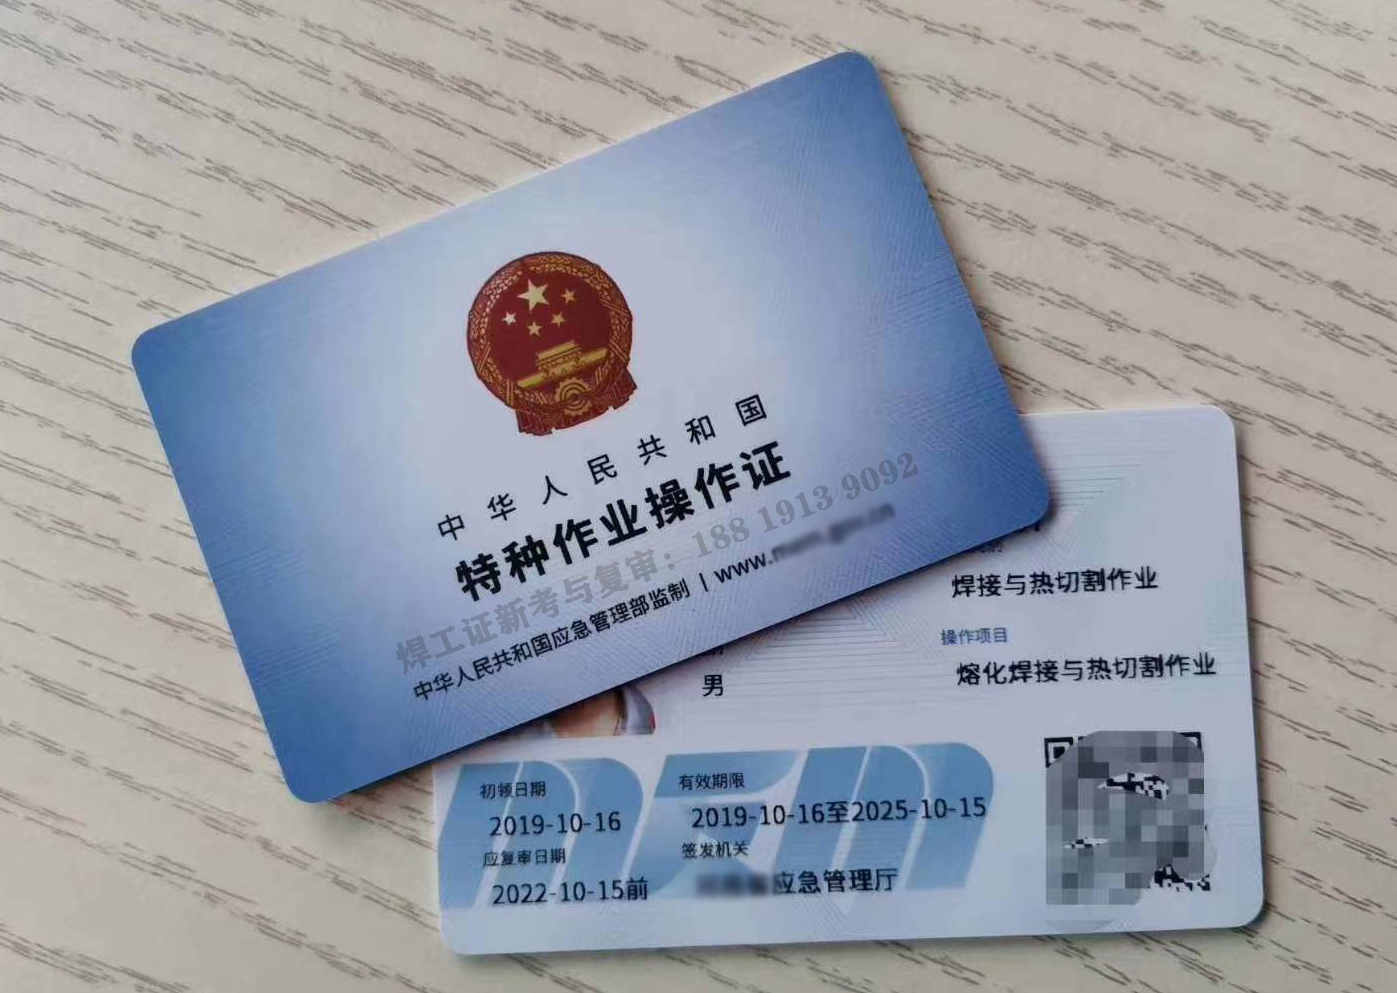 想在广州考焊工证的朋友看过来,这里有你想要的东西!